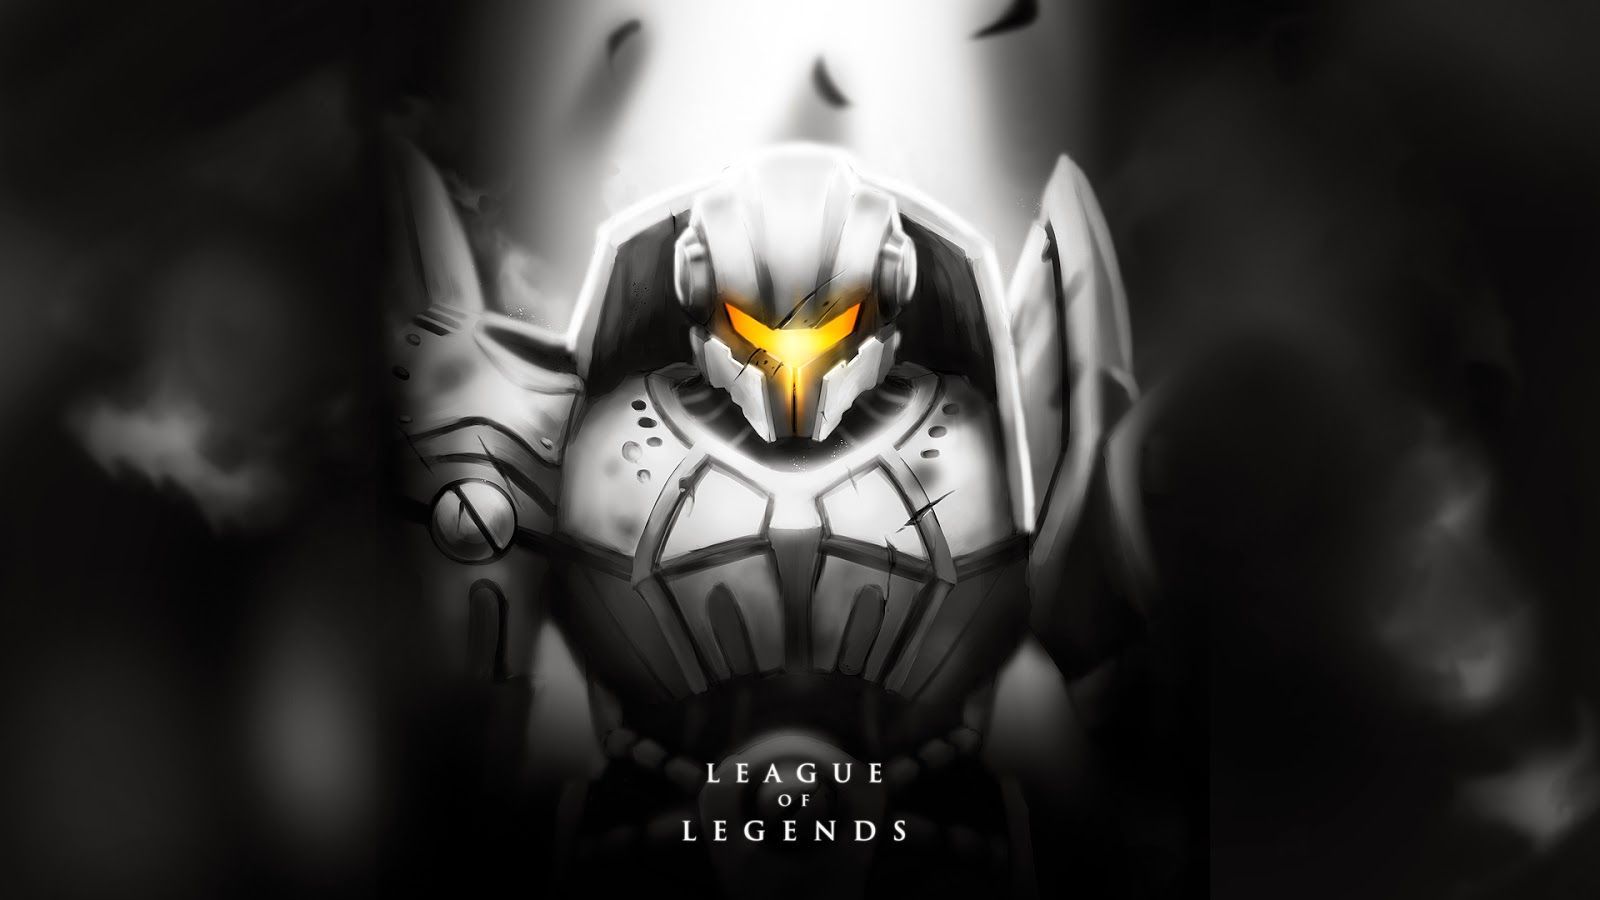 Jayce League of Legends Wallpaper full HD Desktop 1